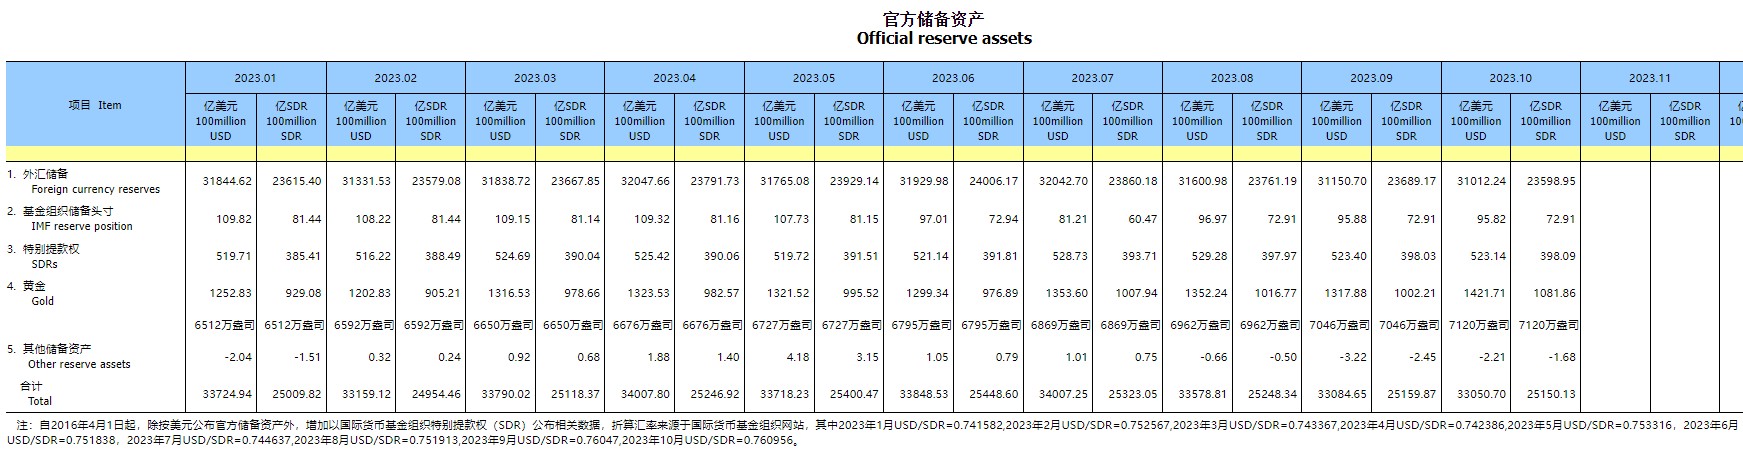 中国10月末黄金储备报7120万盎司 为连续第12个月增加